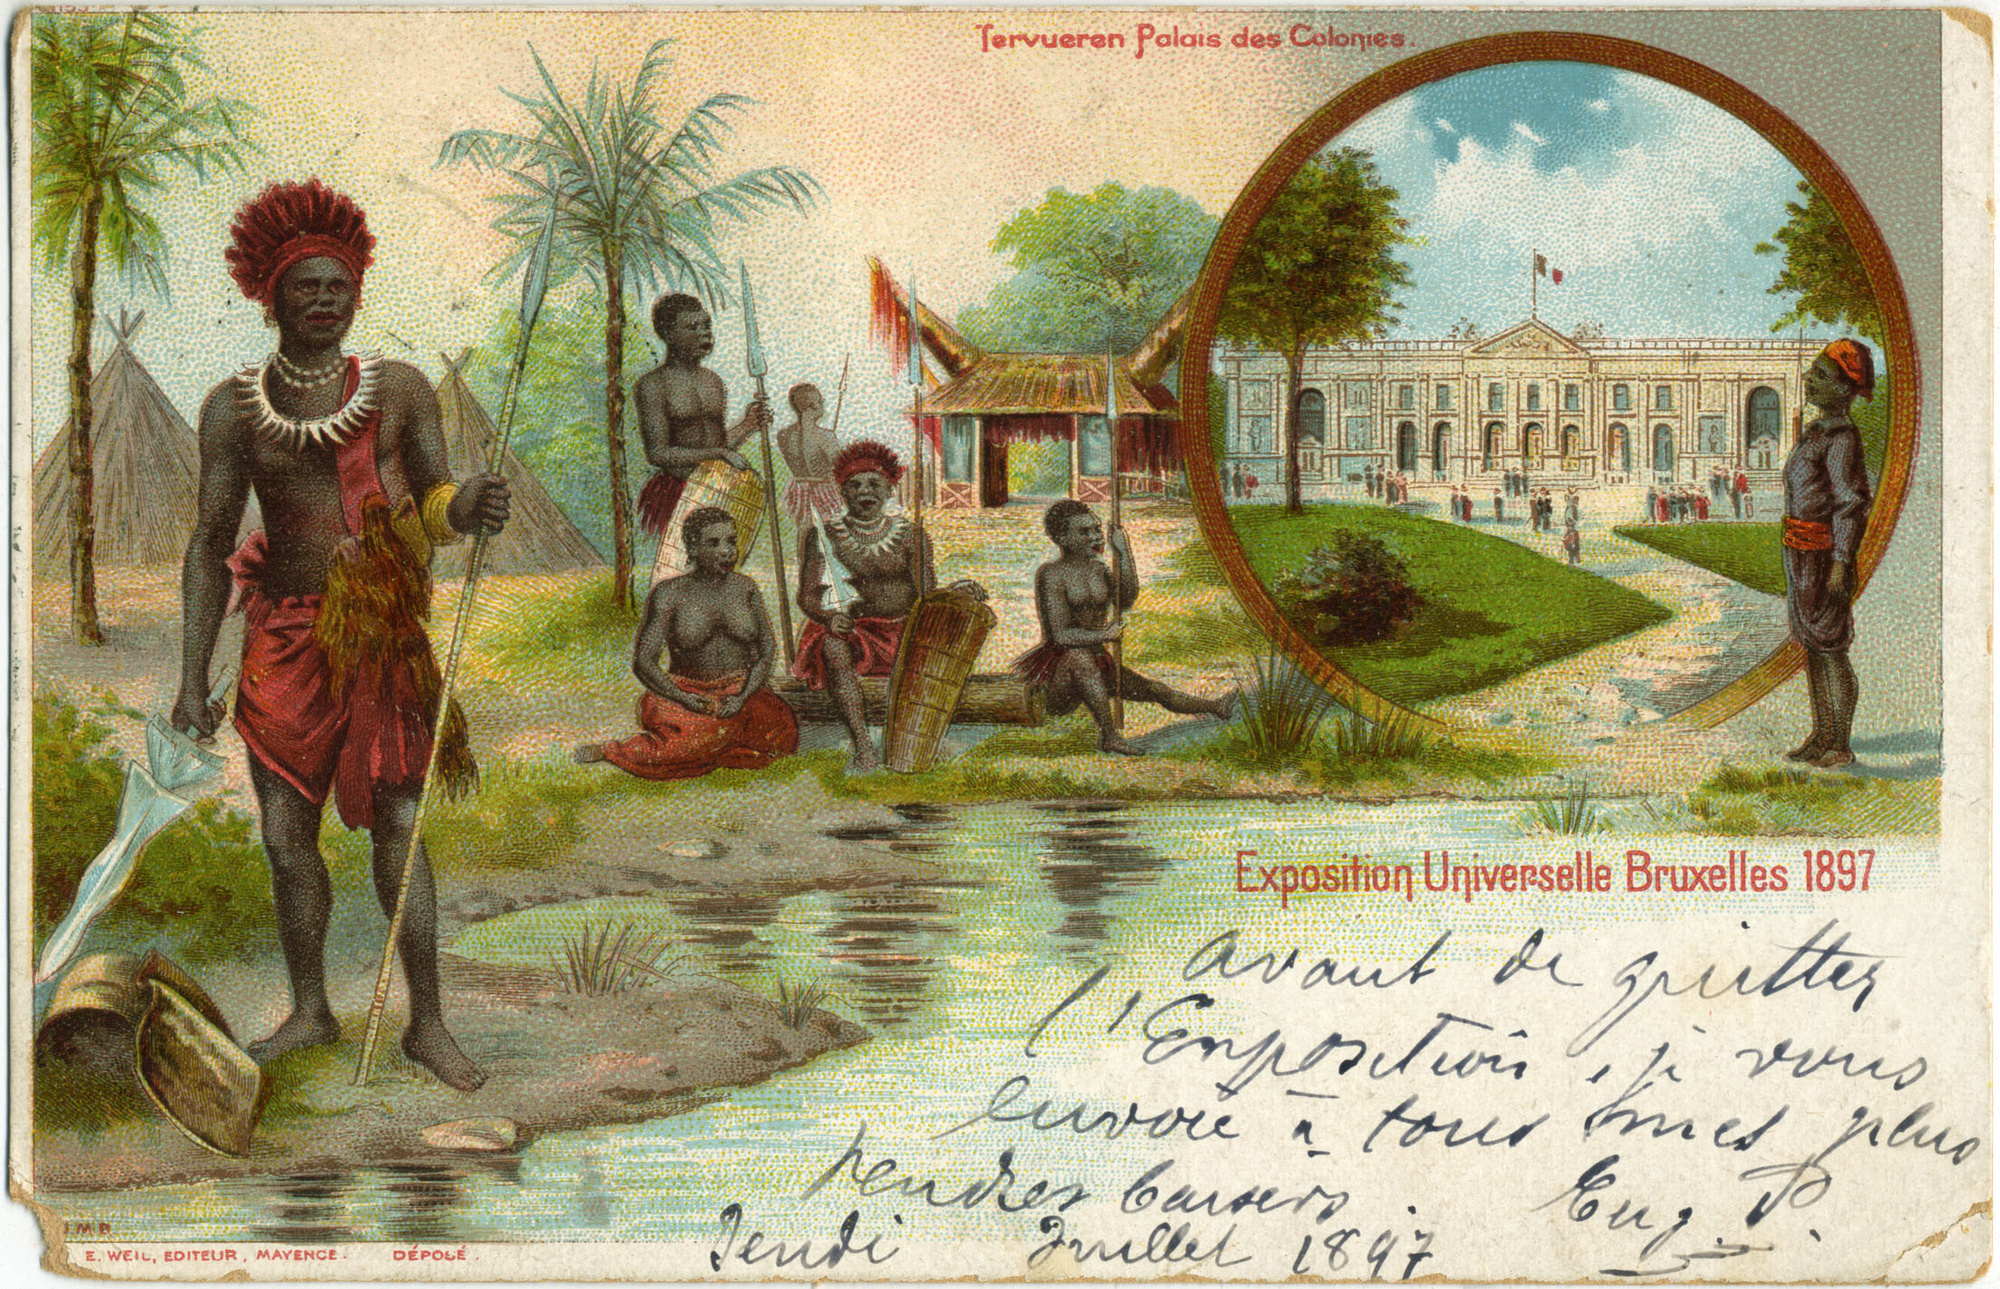 Palais des colonies. Exposition universelle de Bruxelles. Belgium. 1897. Postcard. © Groupe de recherche Achac/priv. coll., DR